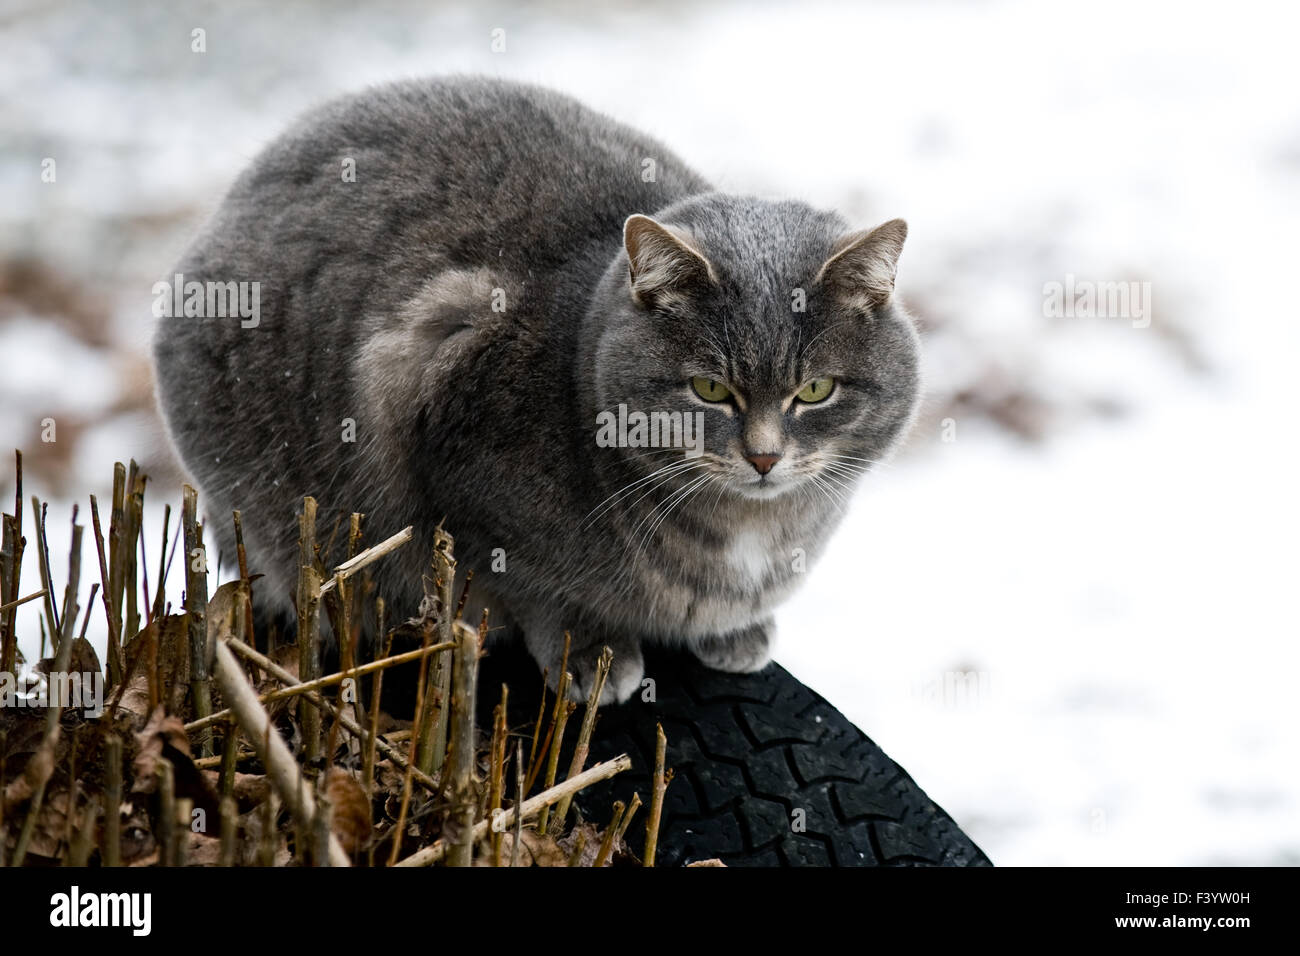 grey cat Stock Photo